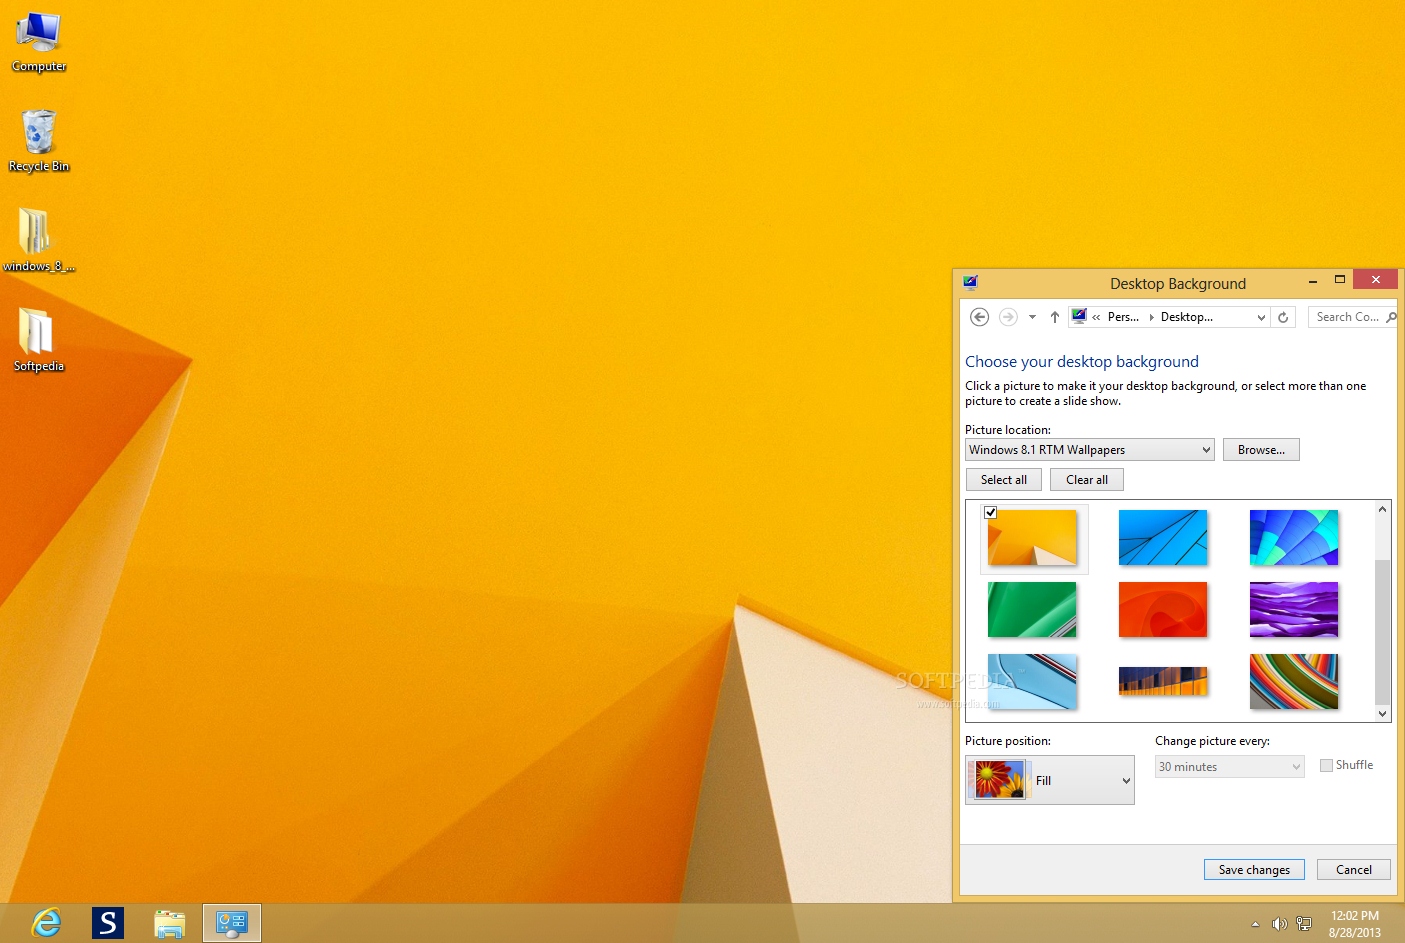 Nhân dịp ra mắt Windows 8.1 RTM, hãy tận dụng ngay cơ hội tải miễn phí những hình nền mới nhất để thay đổi không gian làm việc của bạn. Đa dạng về chủ đề và độ phân giải cao, không gì tuyệt vời hơn cho một máy tính phục vụ công việc và giải trí đỉnh cao!